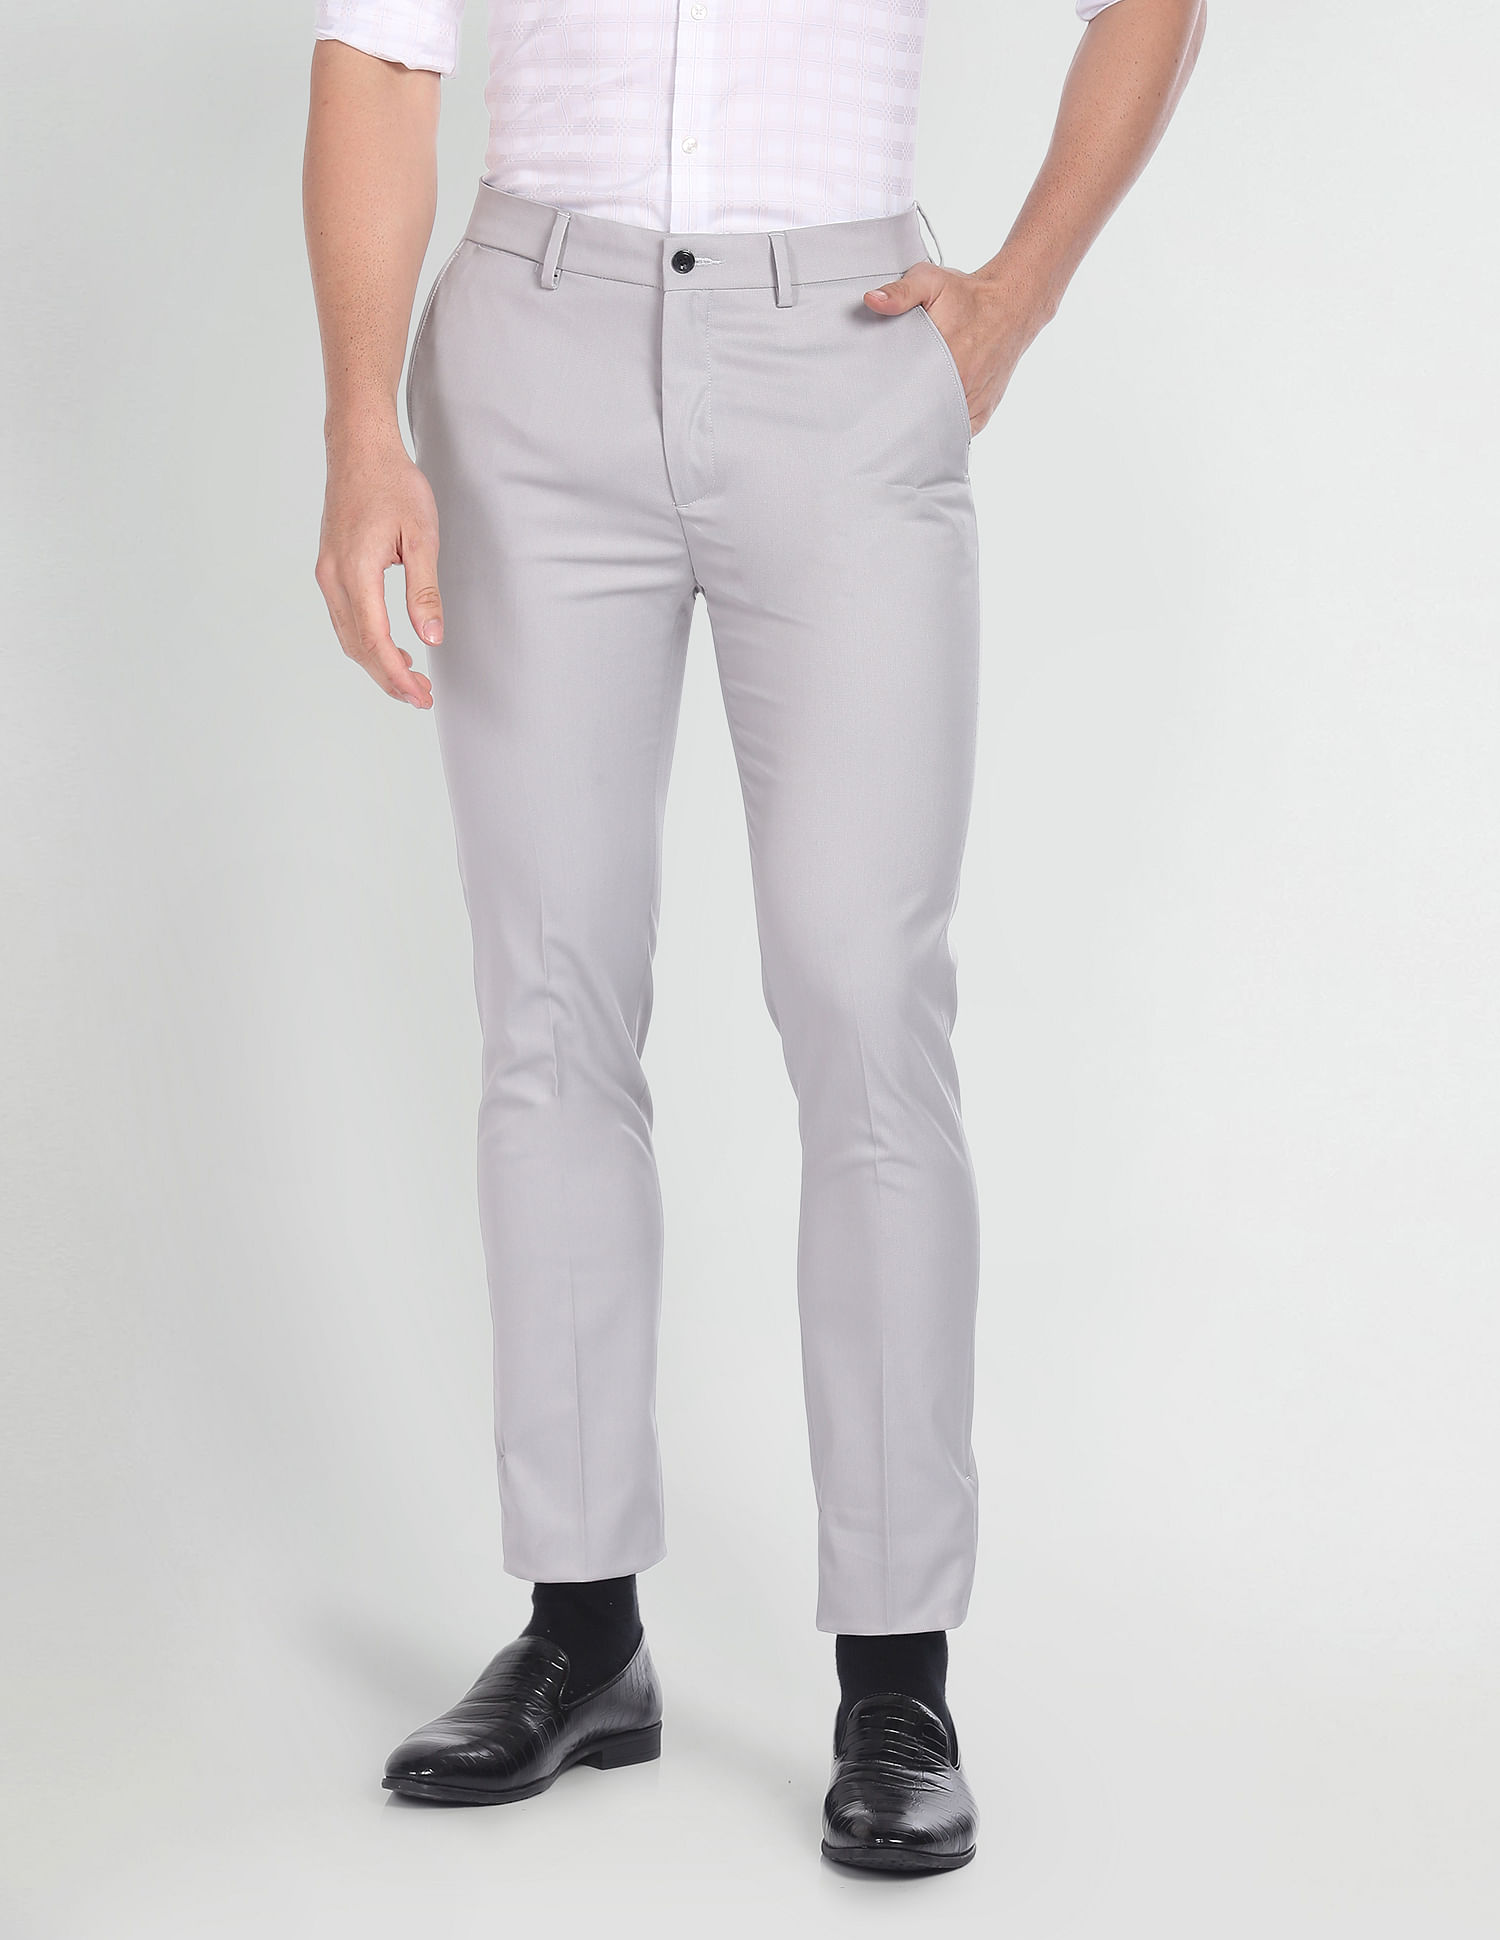 LADIESORA Regular Fit Men Grey Trousers - Buy LADIESORA Regular Fit Men Grey  Trousers Online at Best Prices in India | Flipkart.com